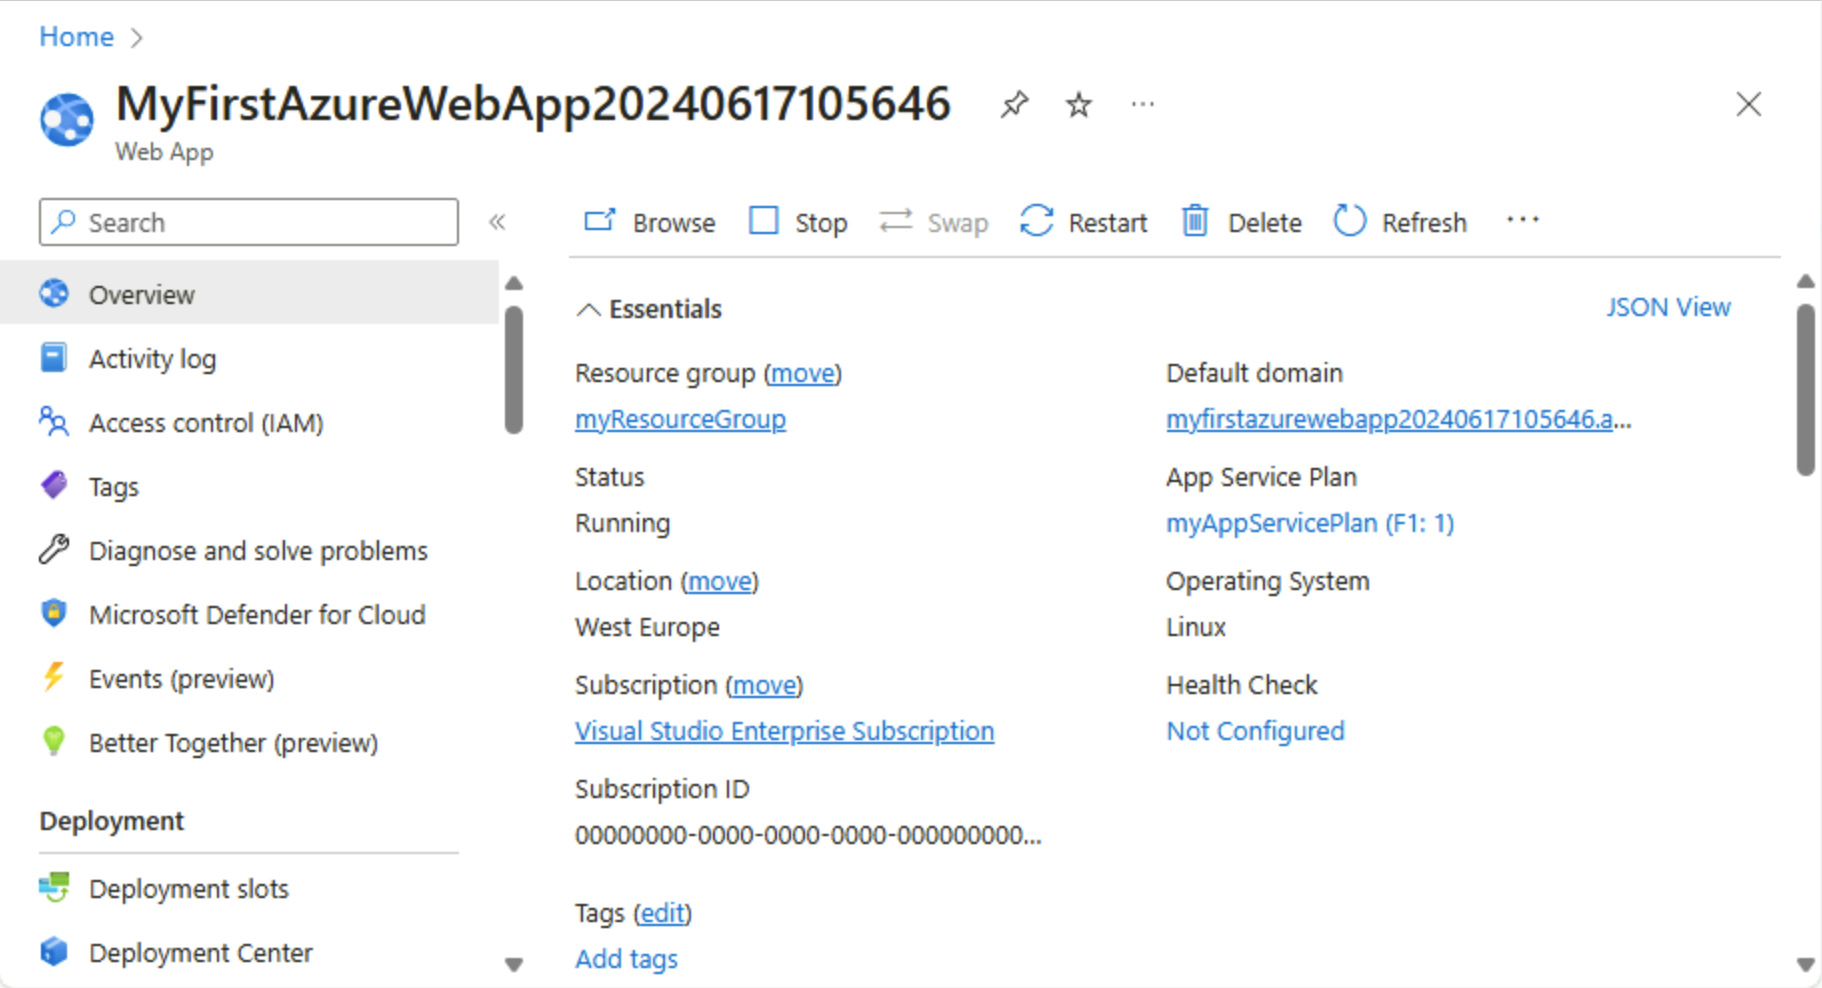 Captura de tela do portal do Azure – página de visão geral do Serviço de Aplicativo.